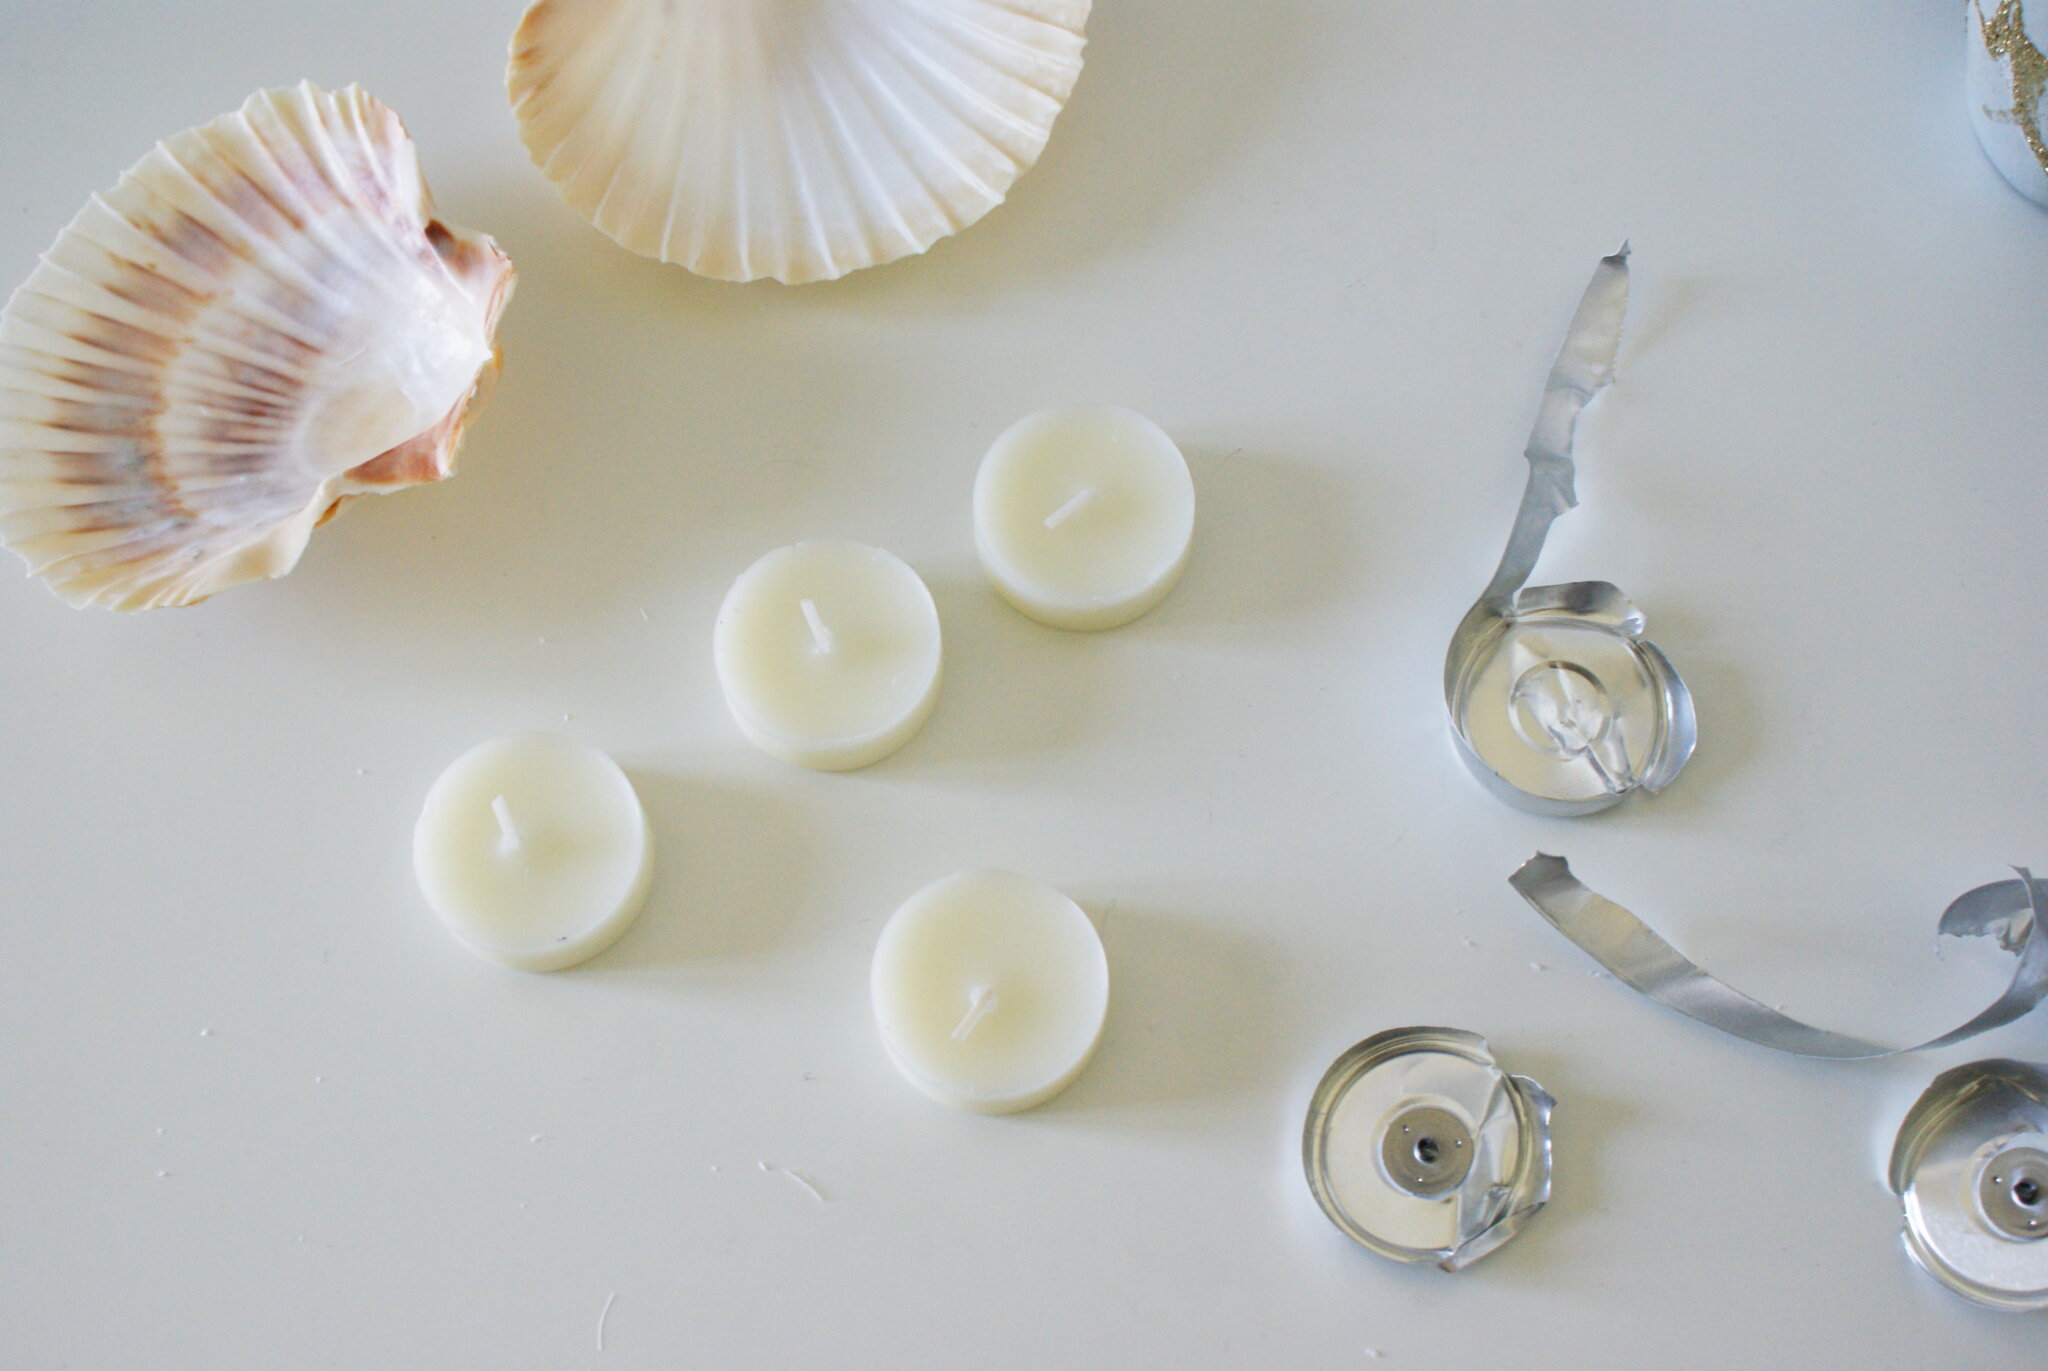 diy sea shell candles ultimate easy quick tutorial how make home decor aesthetic candele conchiglia conchiglie faidate casa come fare scented 